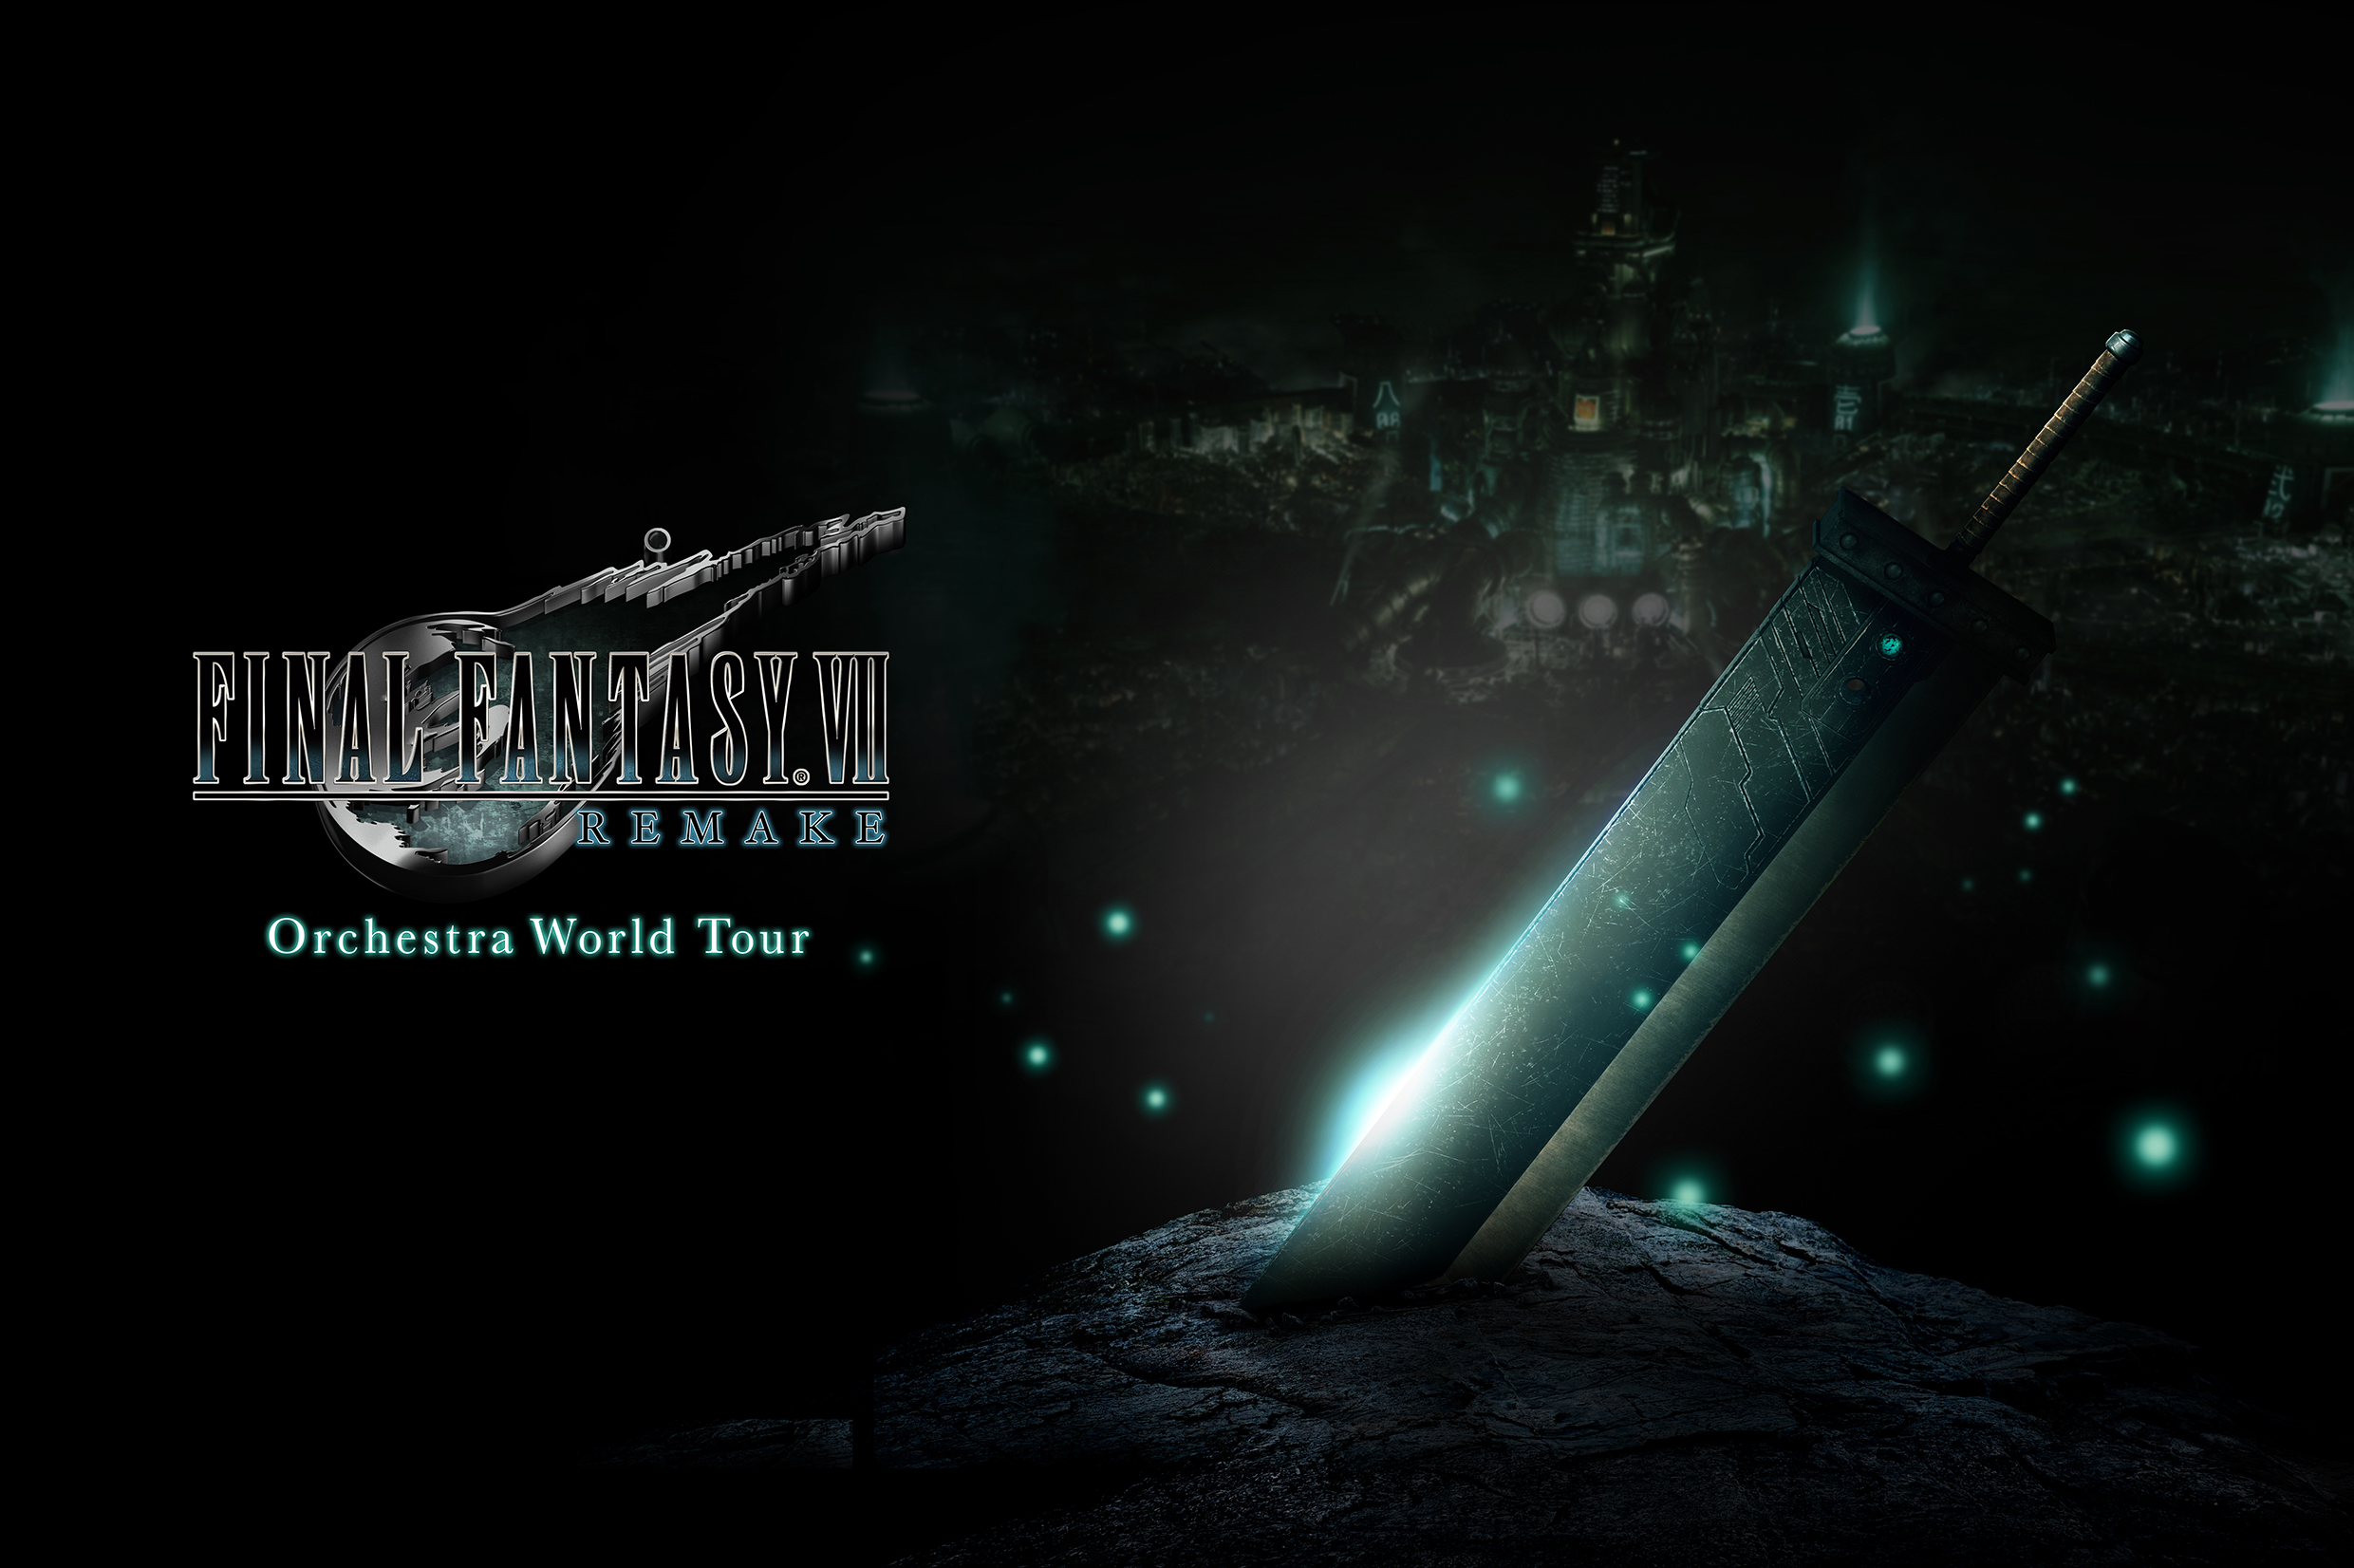 Square Enix Music Ff7r のオーケストラコンサート Final Fantasy Vii Remake Orchestra World Tour を21年2月13日に無観客公演にて配信 本日17 00より配信チケットを販売開始いたします おまけ放送や特典も 詳しくはコンサート公式hpにて